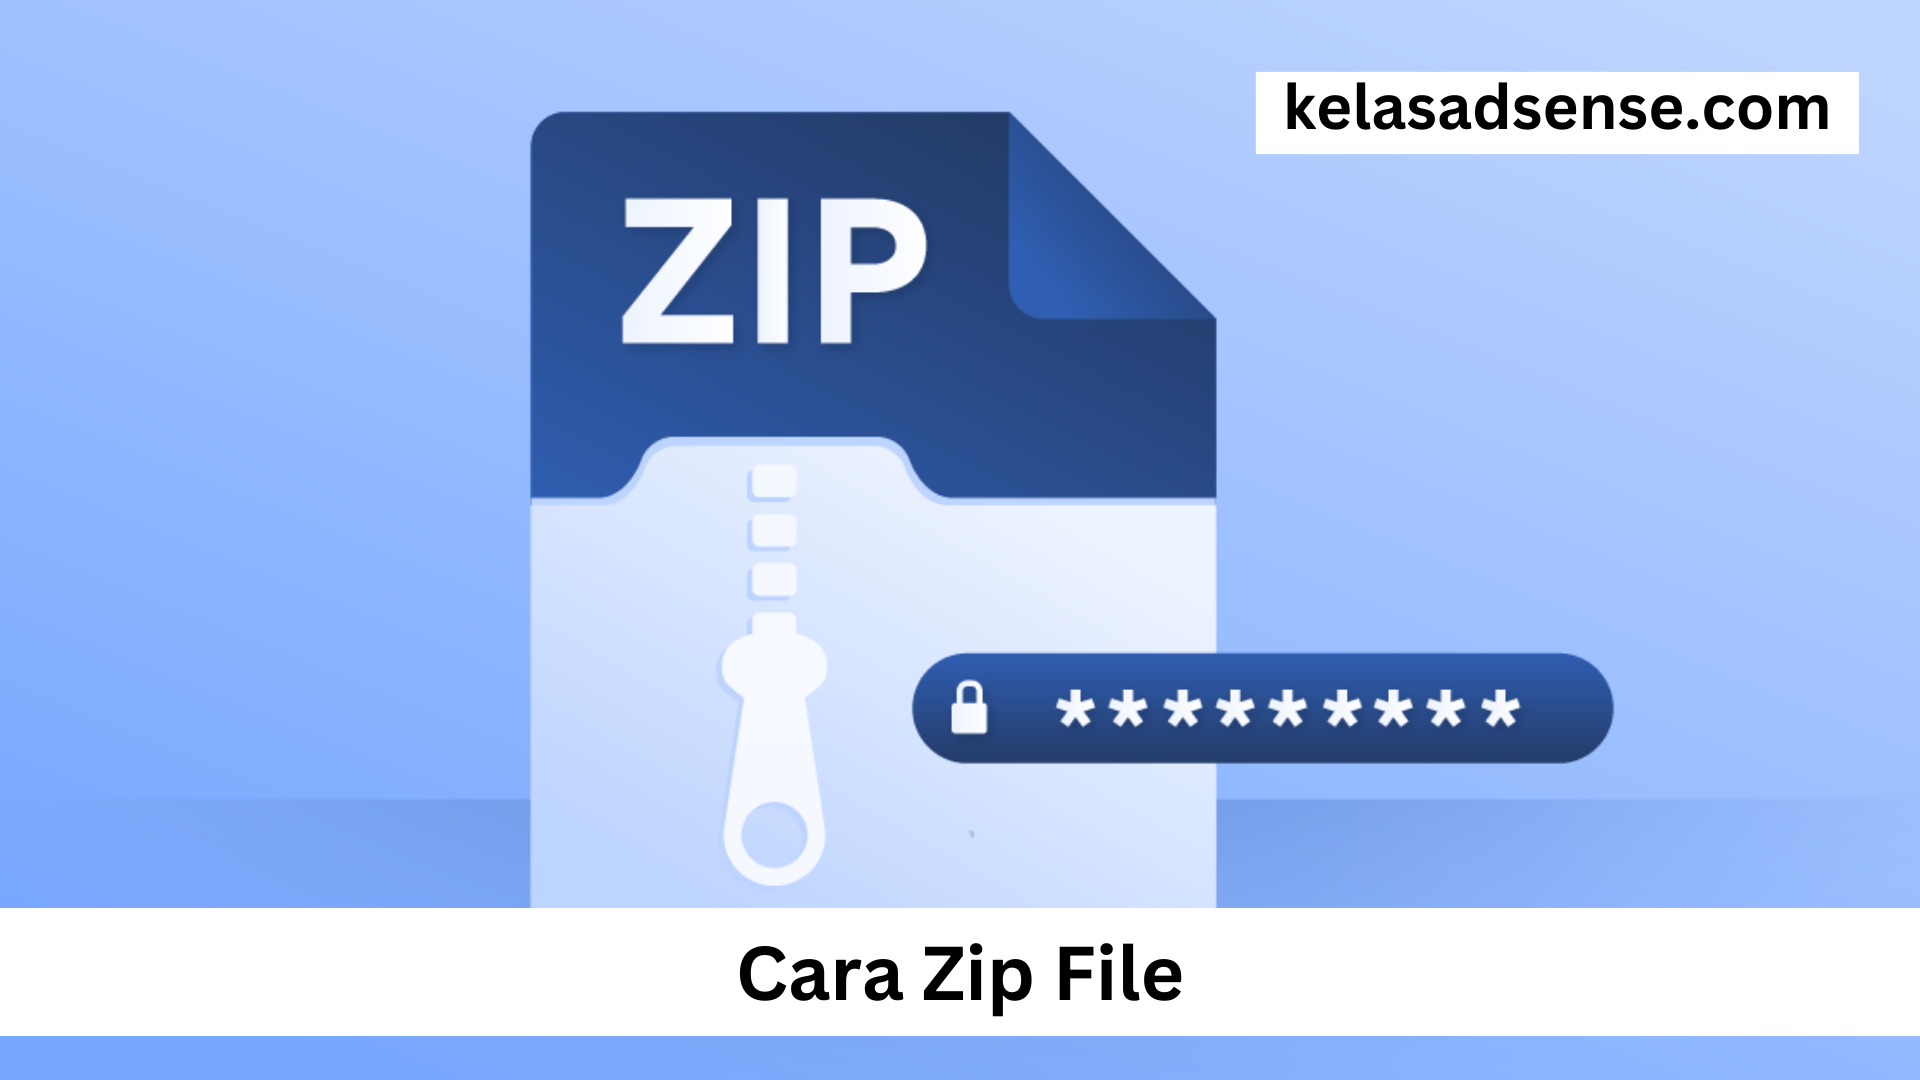 Cara Zip File